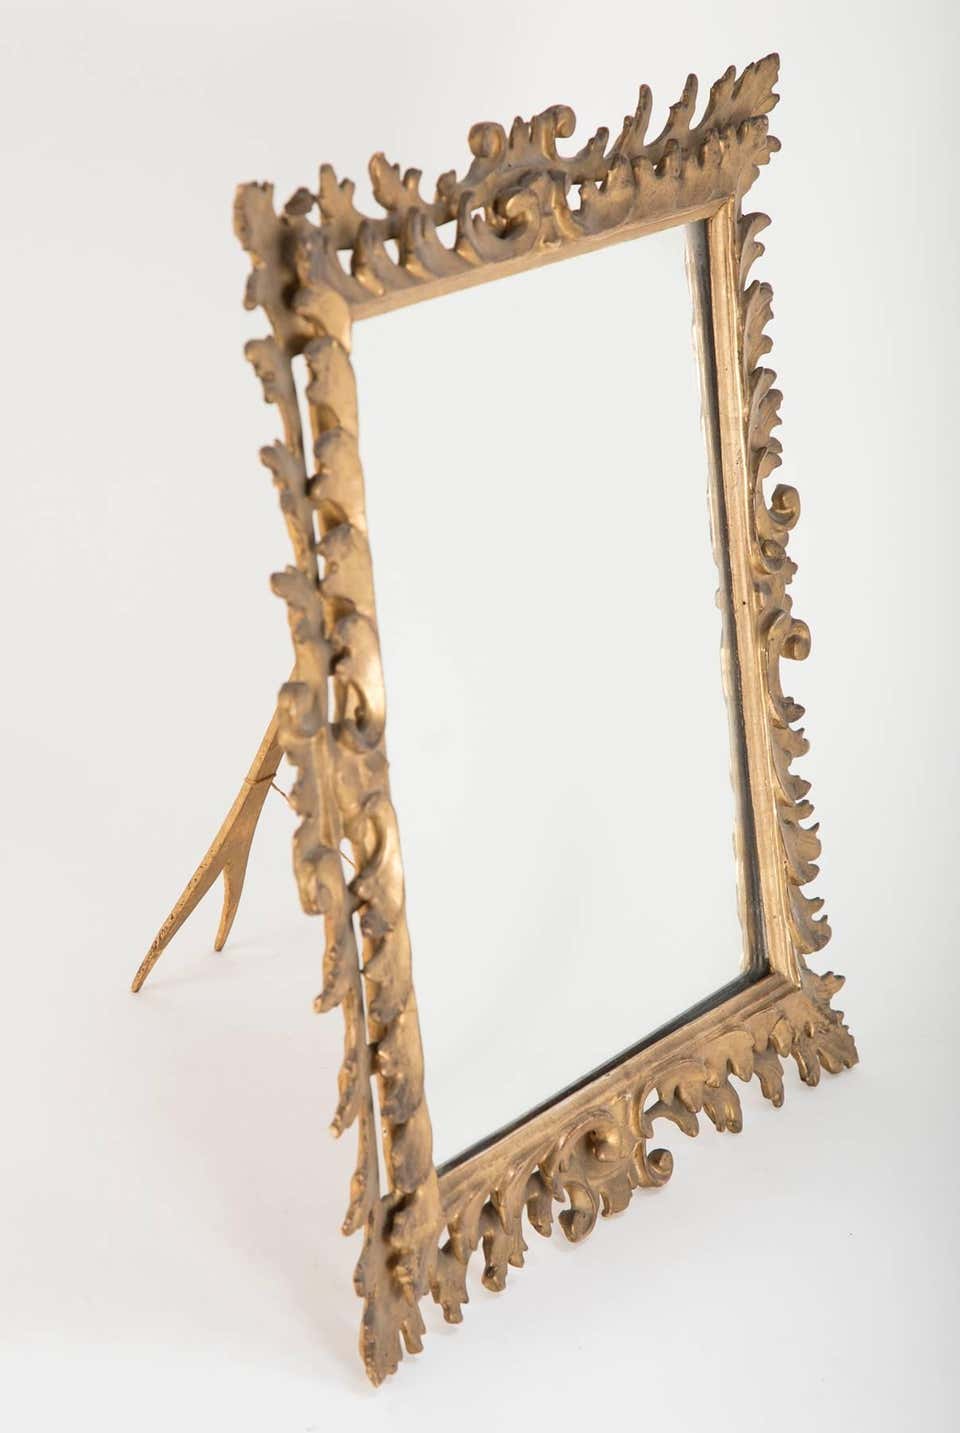 Italian Rococo Giltwood Tabletop Vanity Mirror